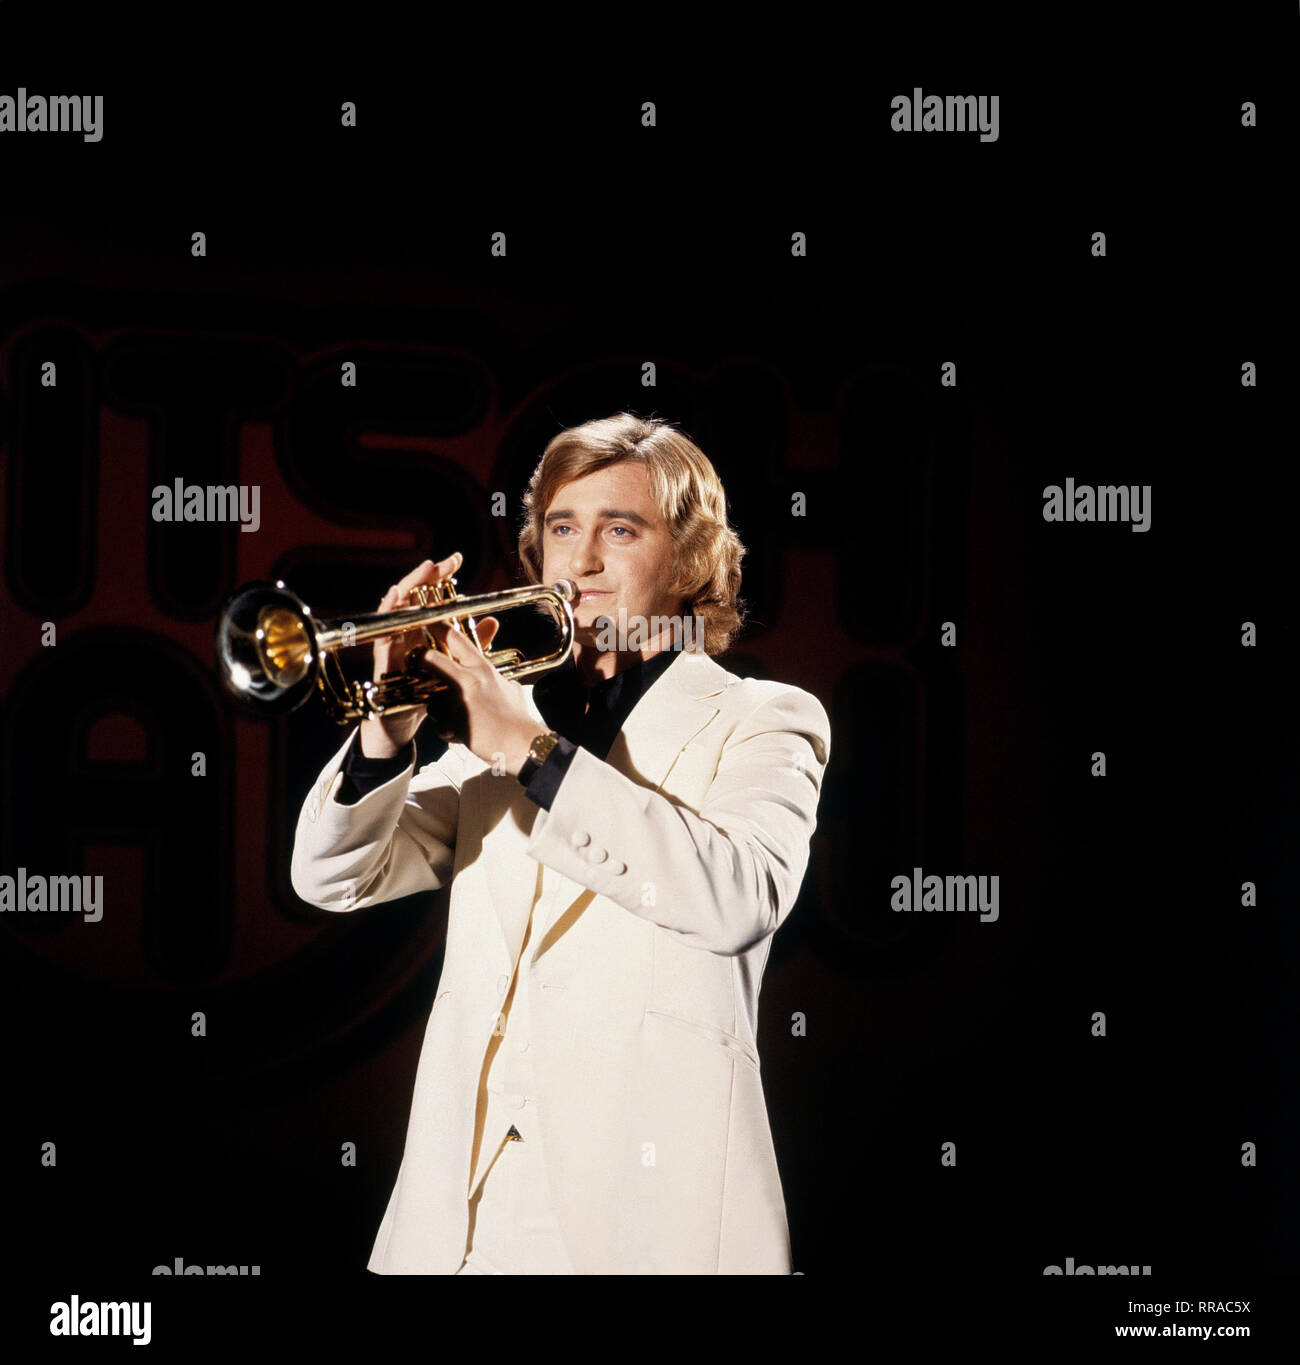 JEAN-CLAUDE BORELLY / JEAN-CLAUDE BORELLY, französischer Jazz-Trompeter,  Aufnahme aus den 80er Jahren. / Überschrift : JEAN-CLAUDE BORELLY Photo  Stock - Alamy